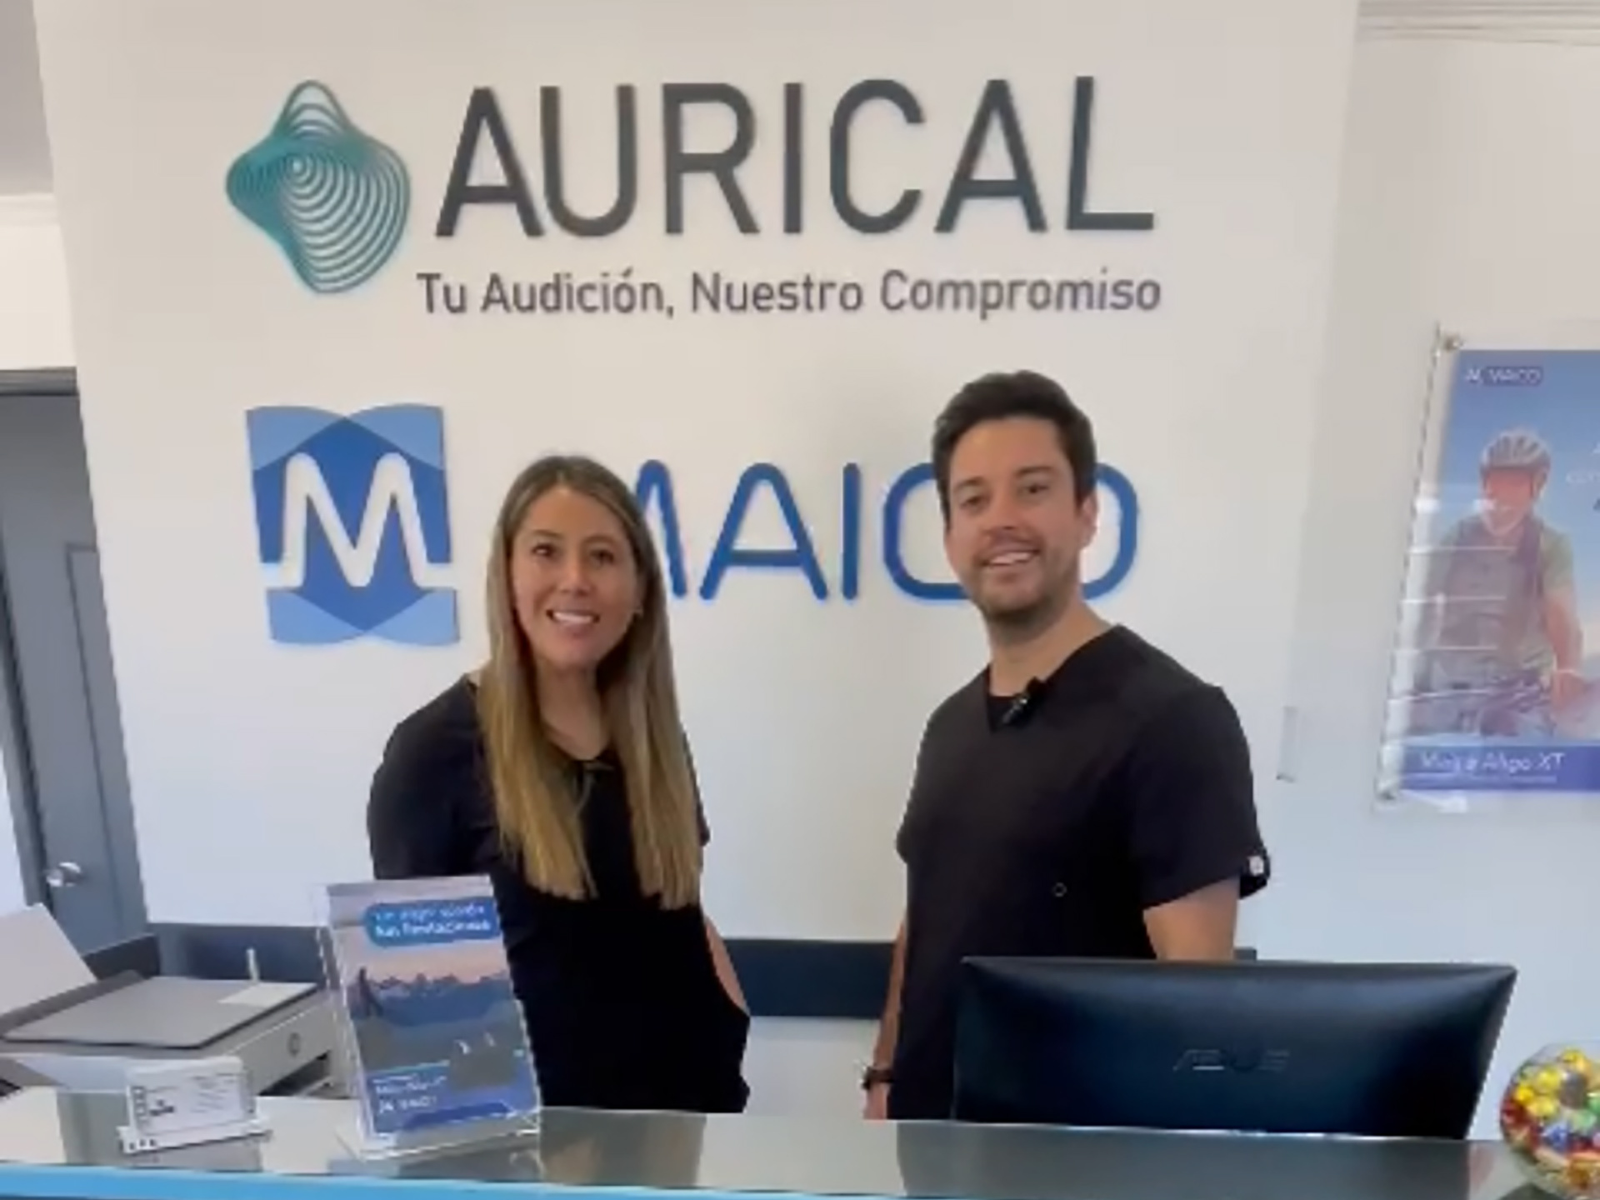 Adriana y Felipe, audiólogos de Aurical